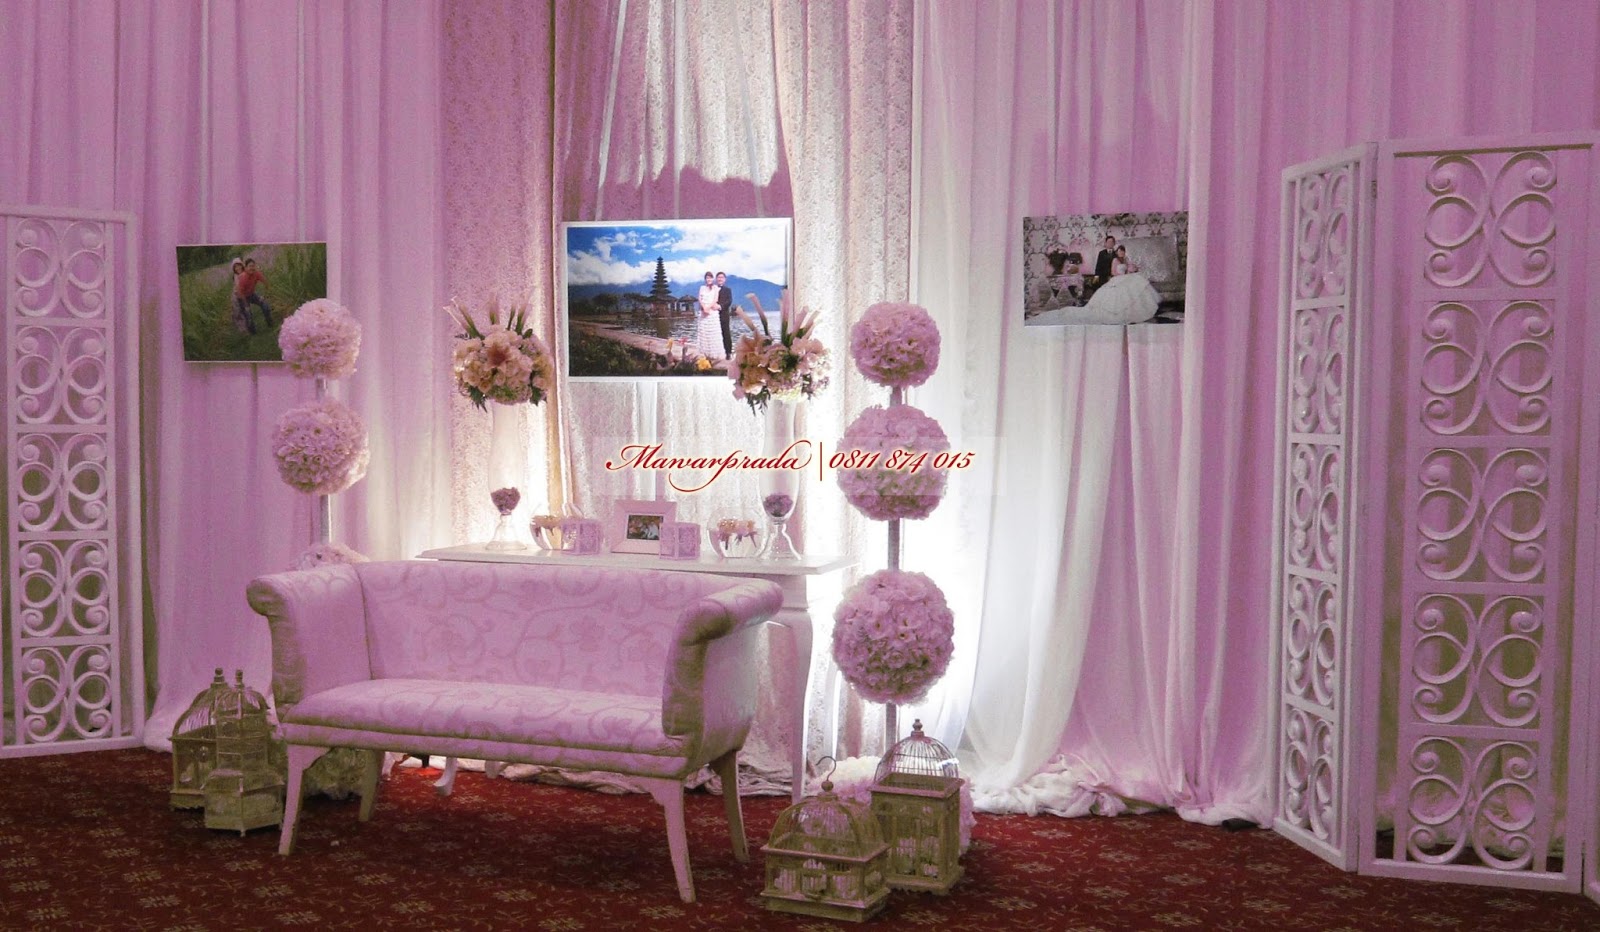 Contoh Photo  Booth  Pernikahan  yang lagi ngetrend 